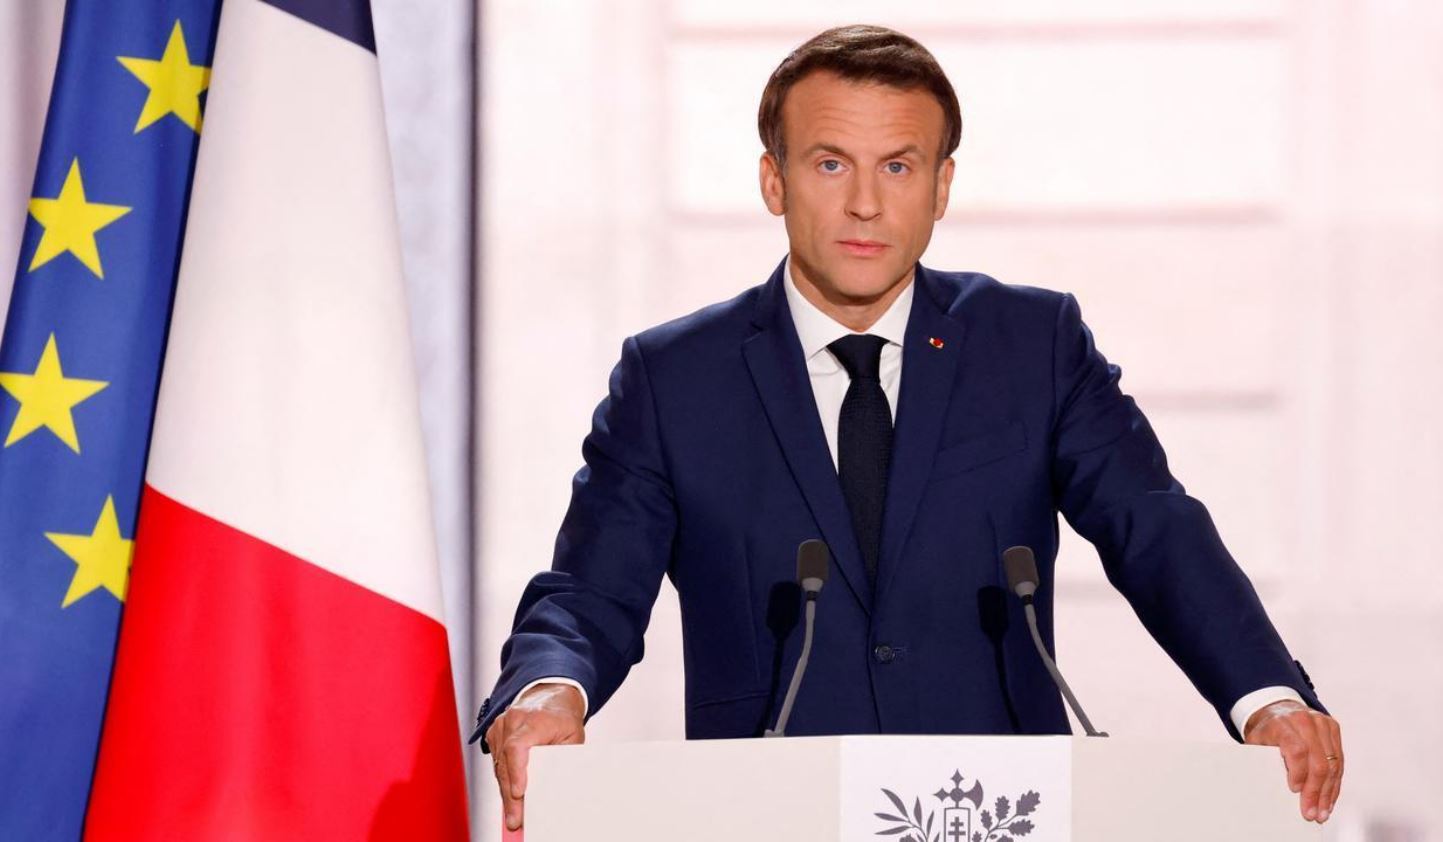     Réinvesti, Macron promet "une France plus forte" et "une planète plus vivable"

